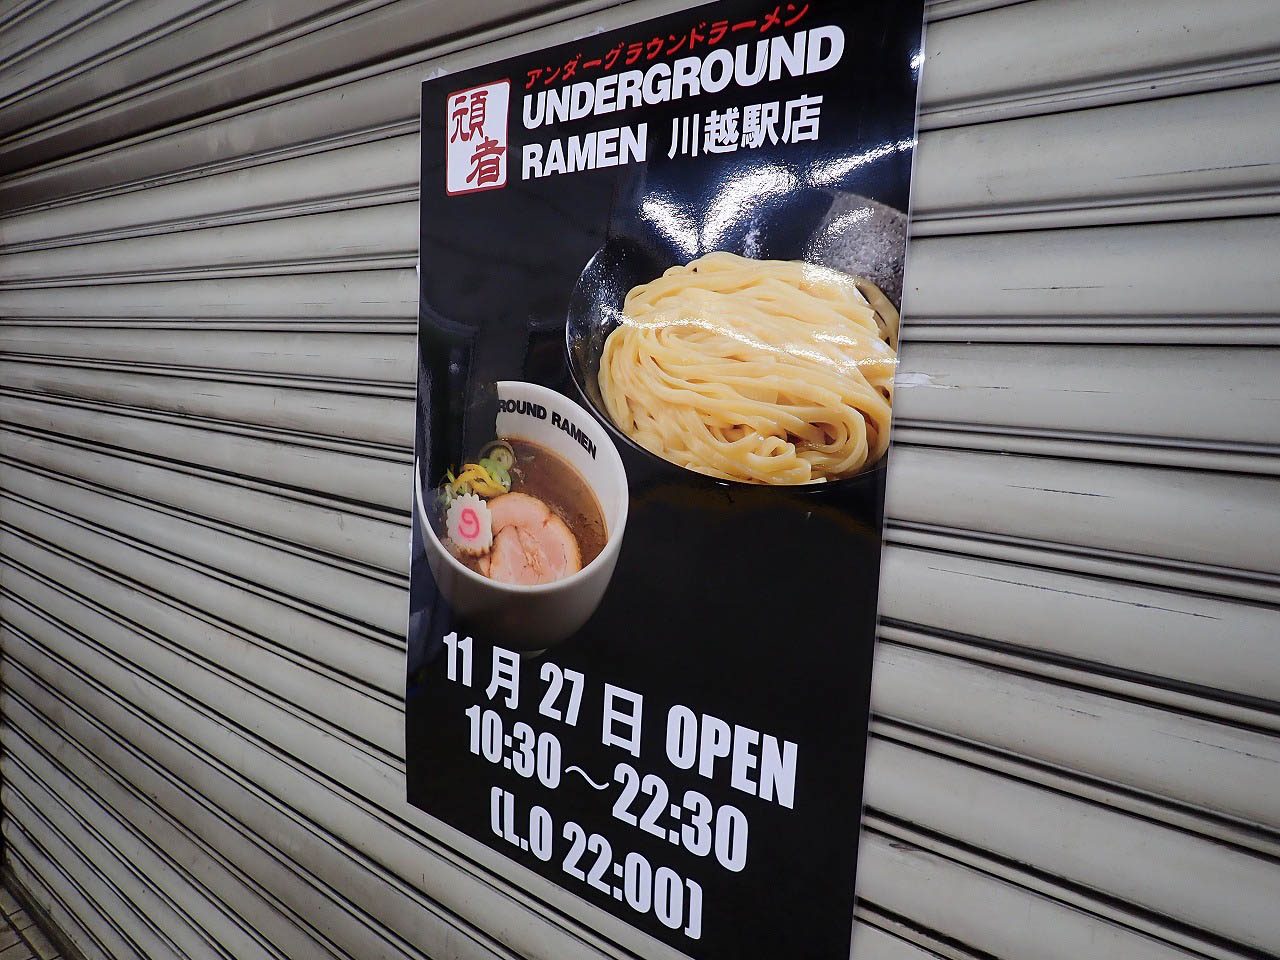 『UNDERGROUND RAMEN 川越駅店』のオープンの案内